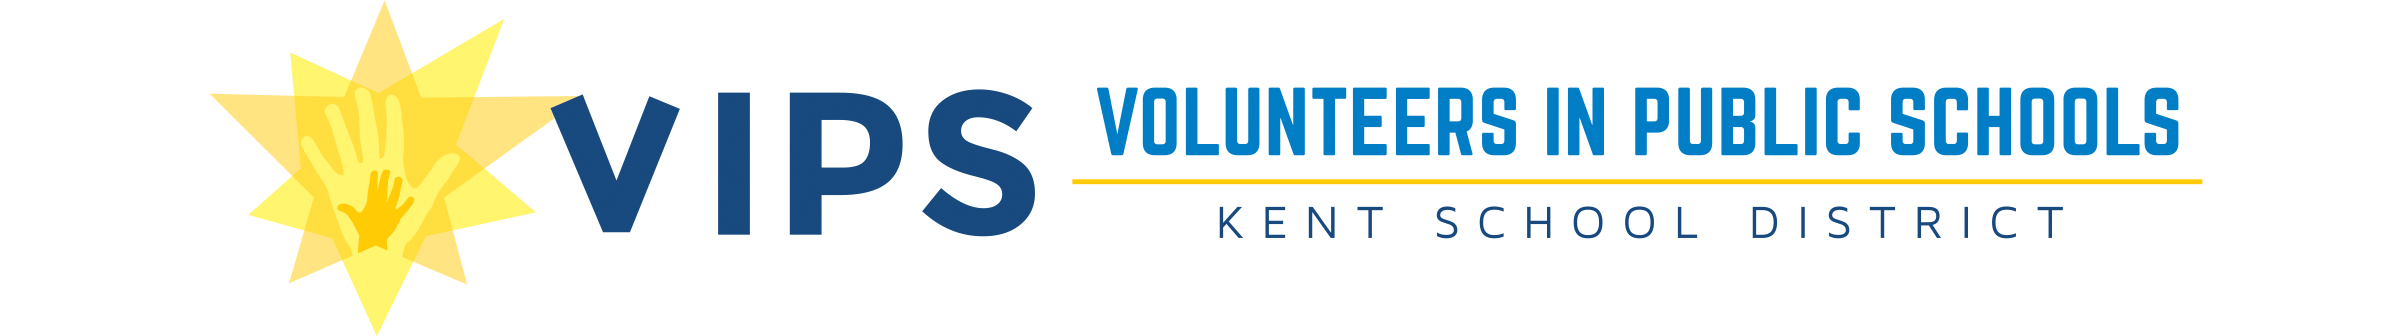 Volunteers in Public Schools Kent School District